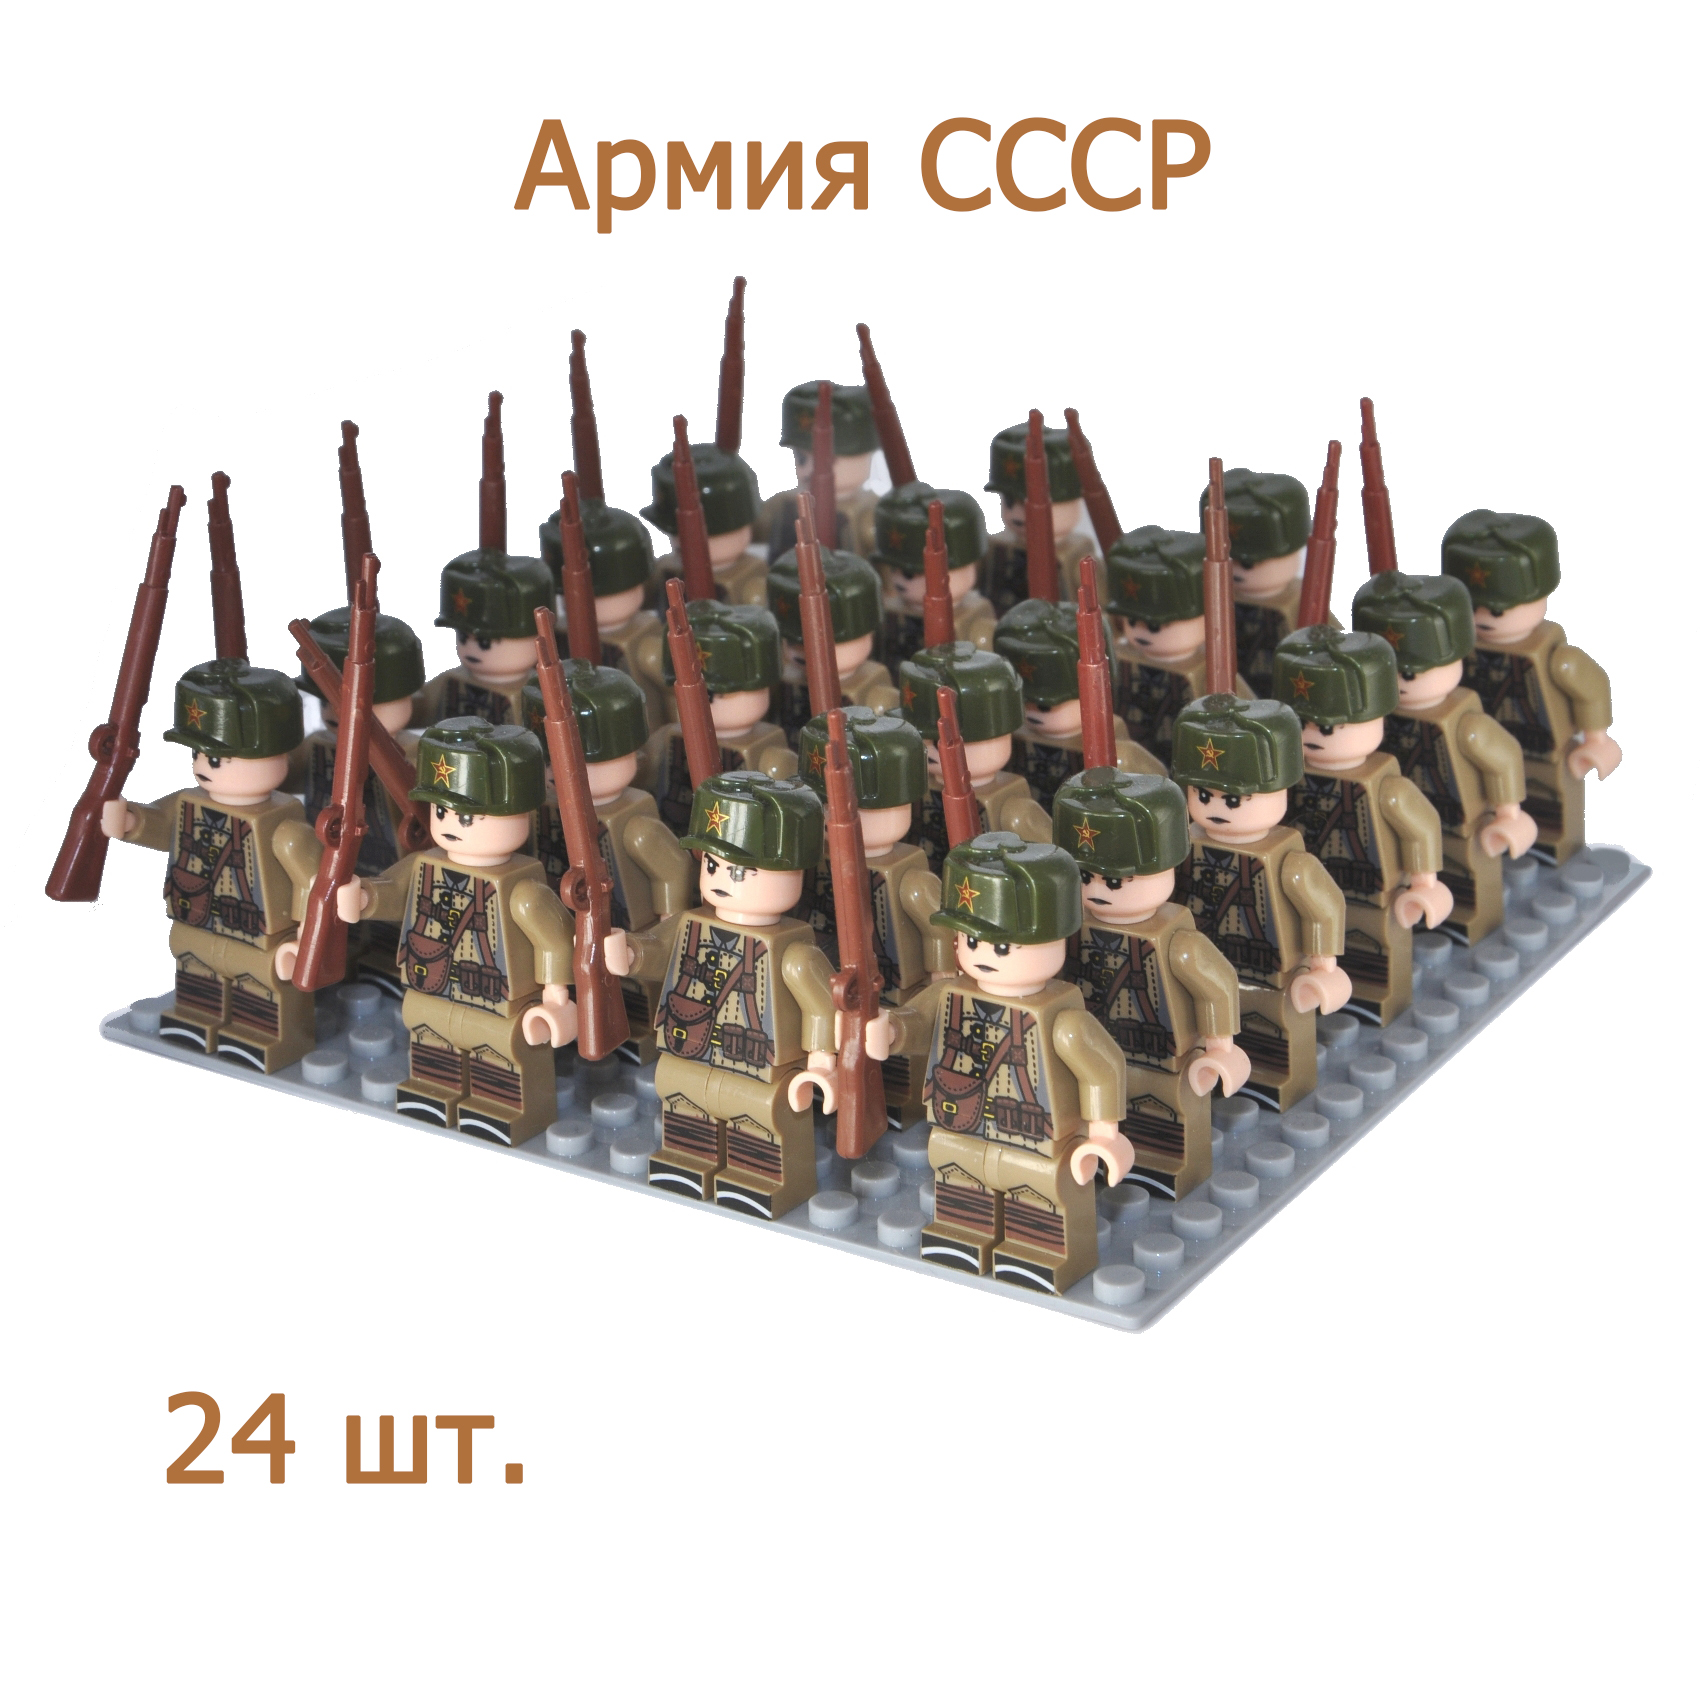 Армия СССР-5. 24 фигурки солдатиков с оружием времен ВОВ, конструктор для мальчиков.